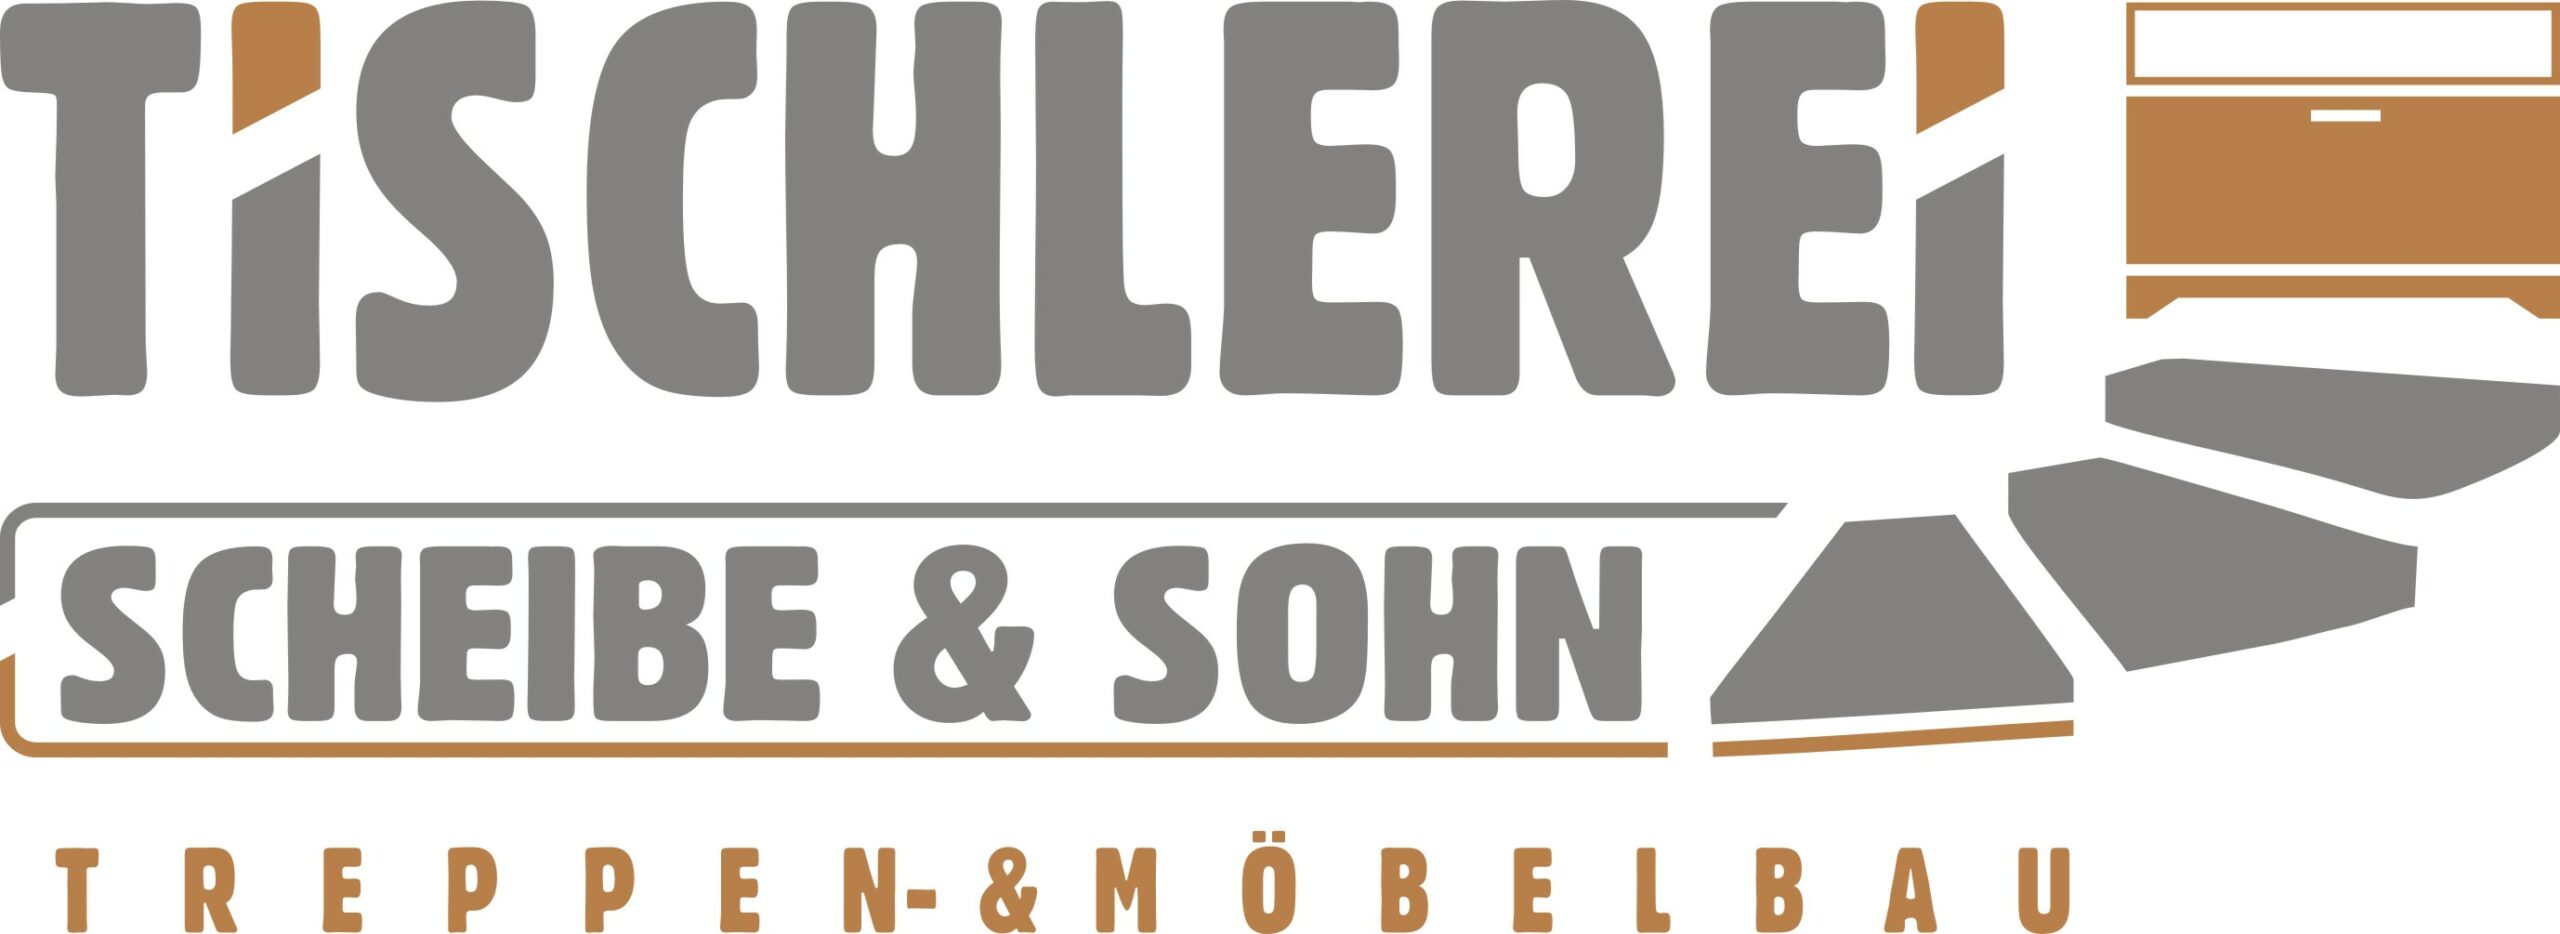 Tischlerei Scheibe & Sohn